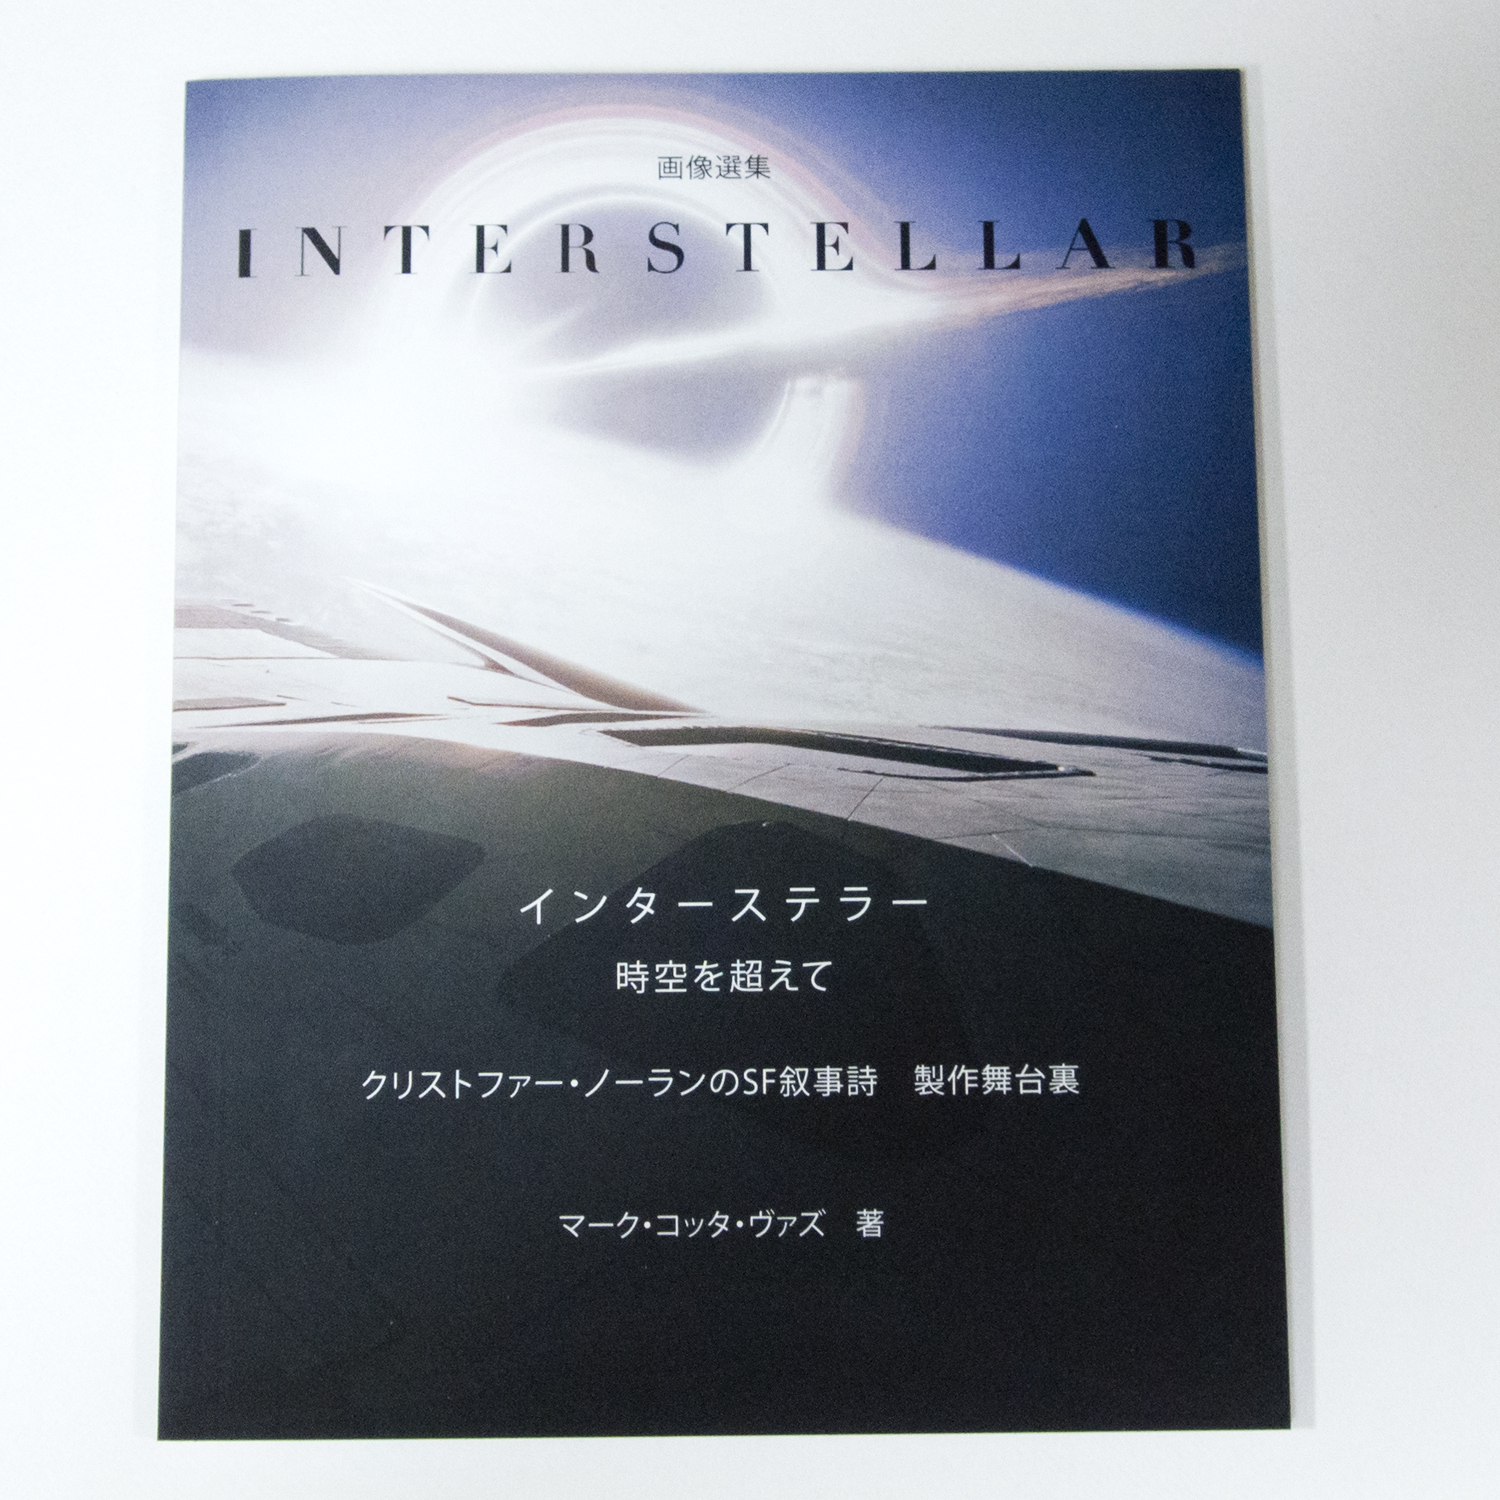 インターステラー スチールブック仕様 日本盤 - すちーるぶっく れびゅー